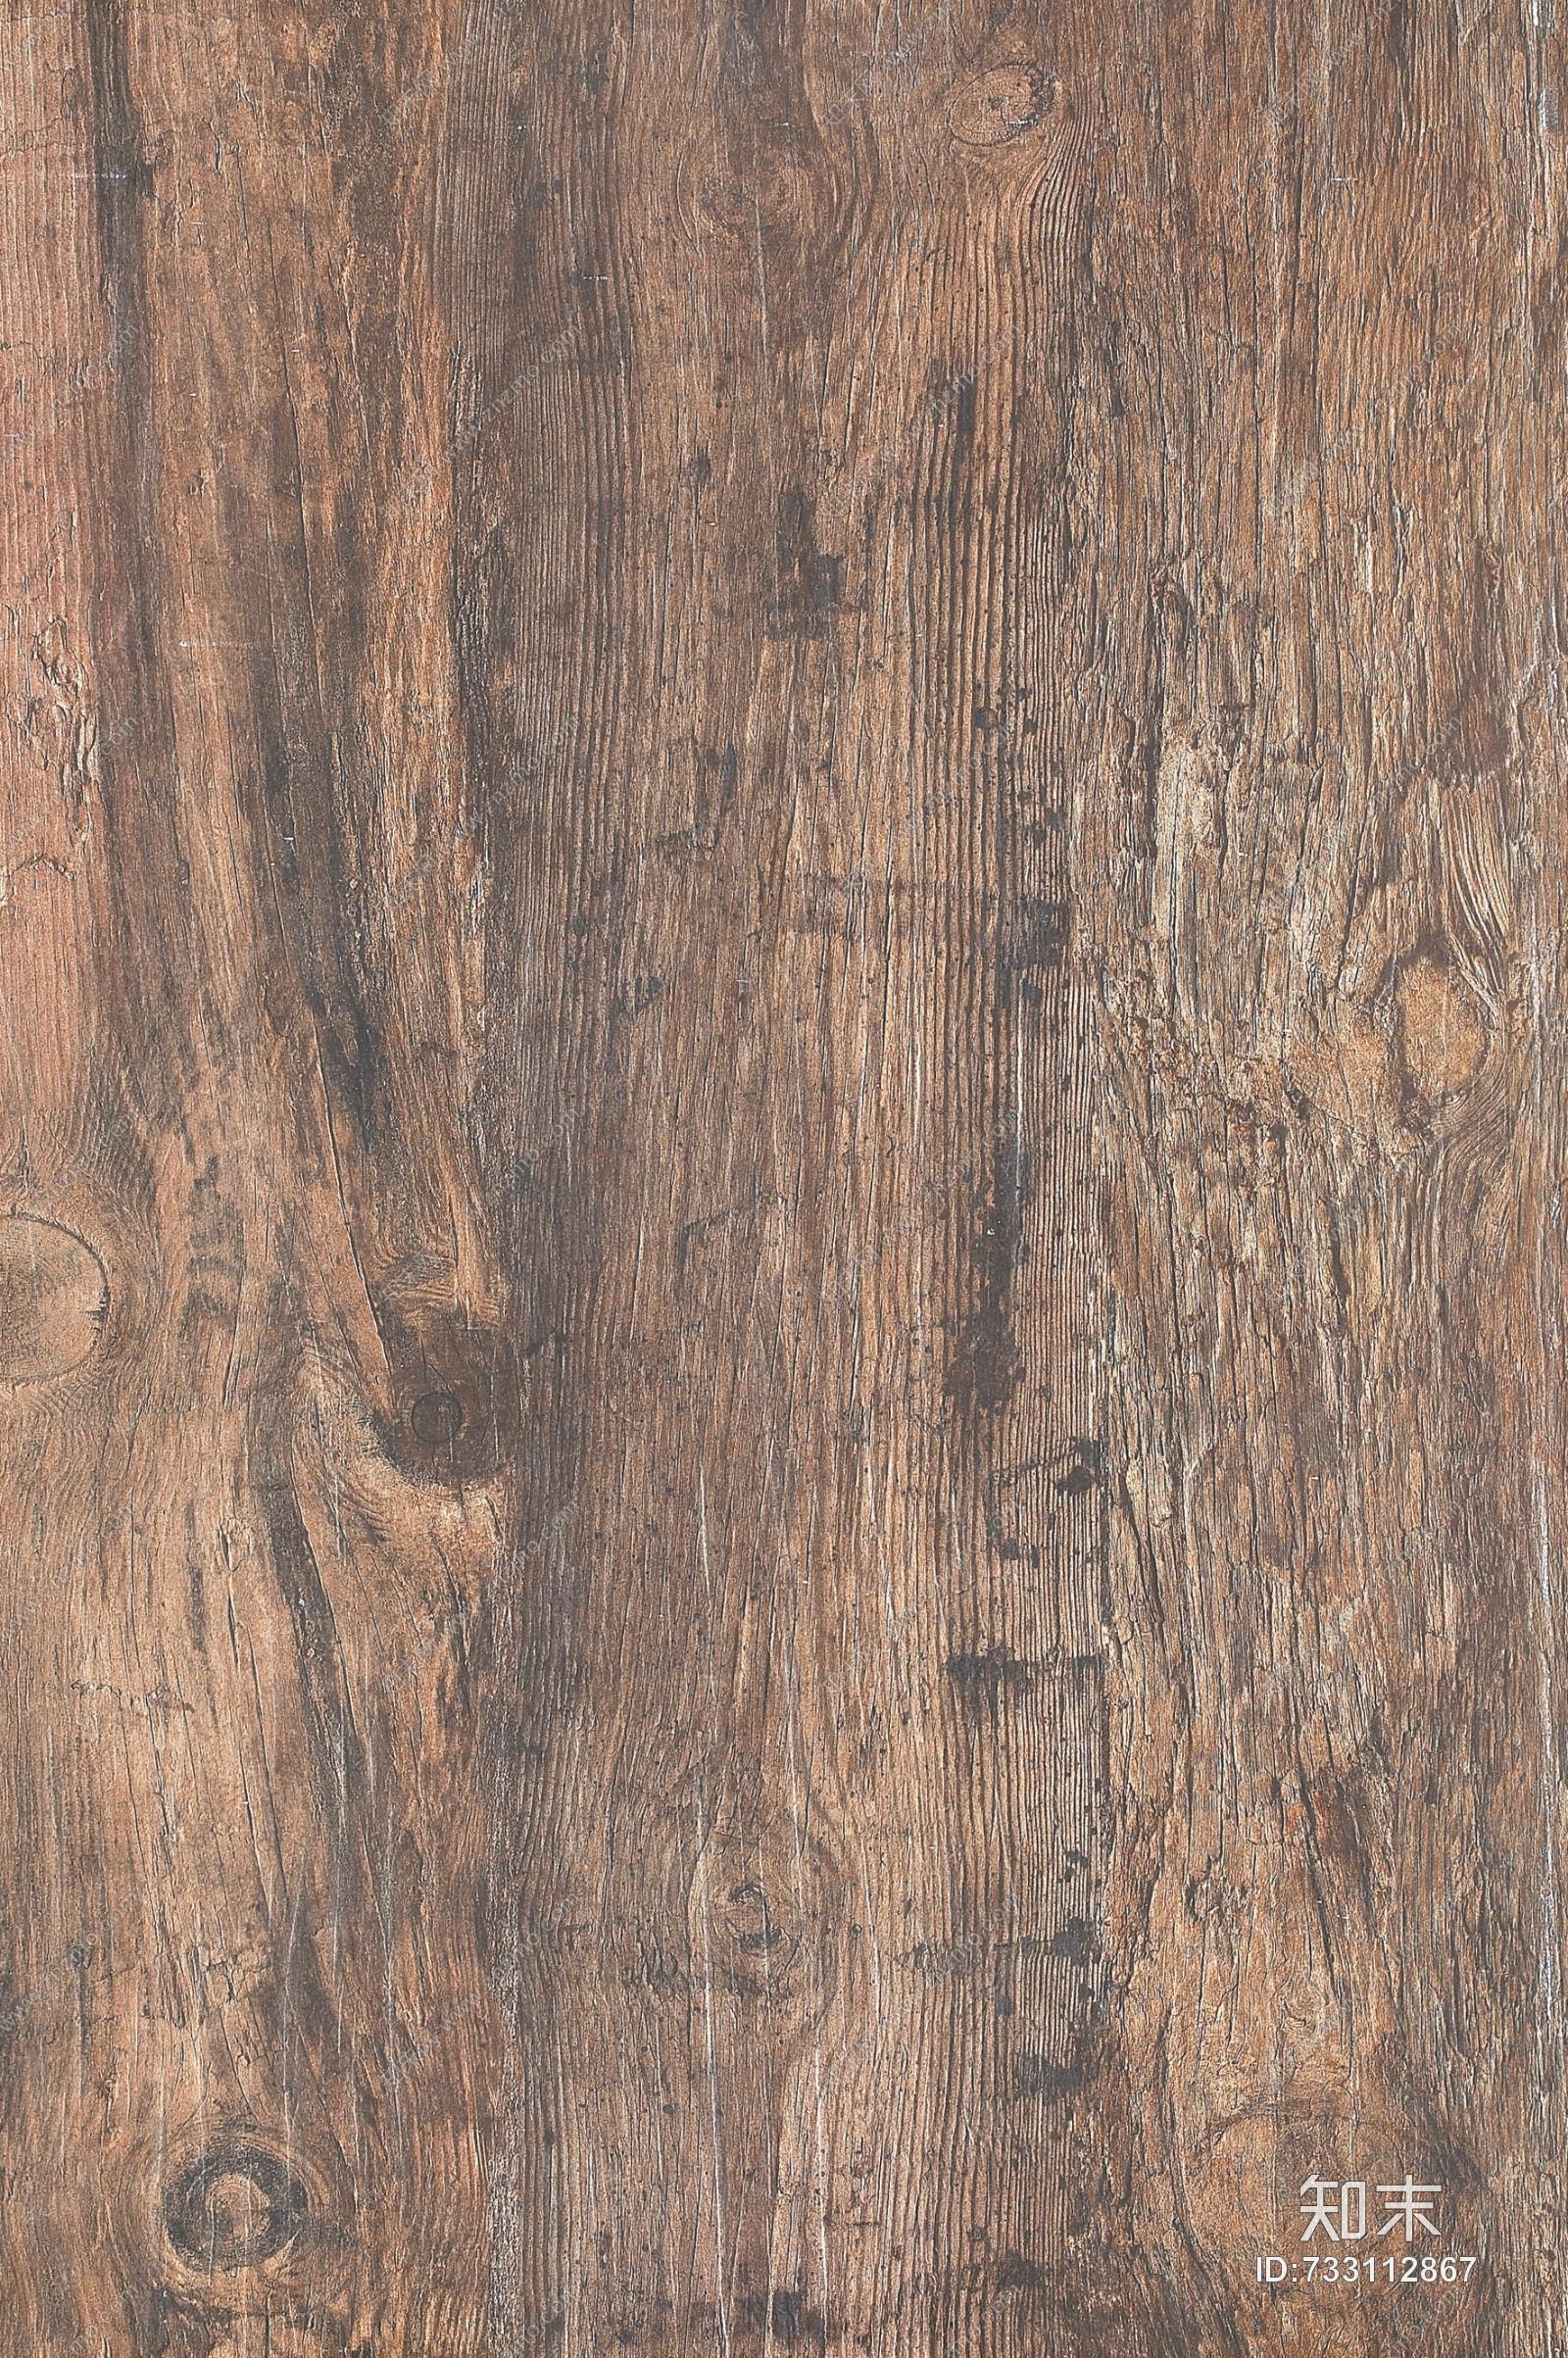 木材-残旧木(166)贴图贴图下载_木材-残旧木(166)贴图